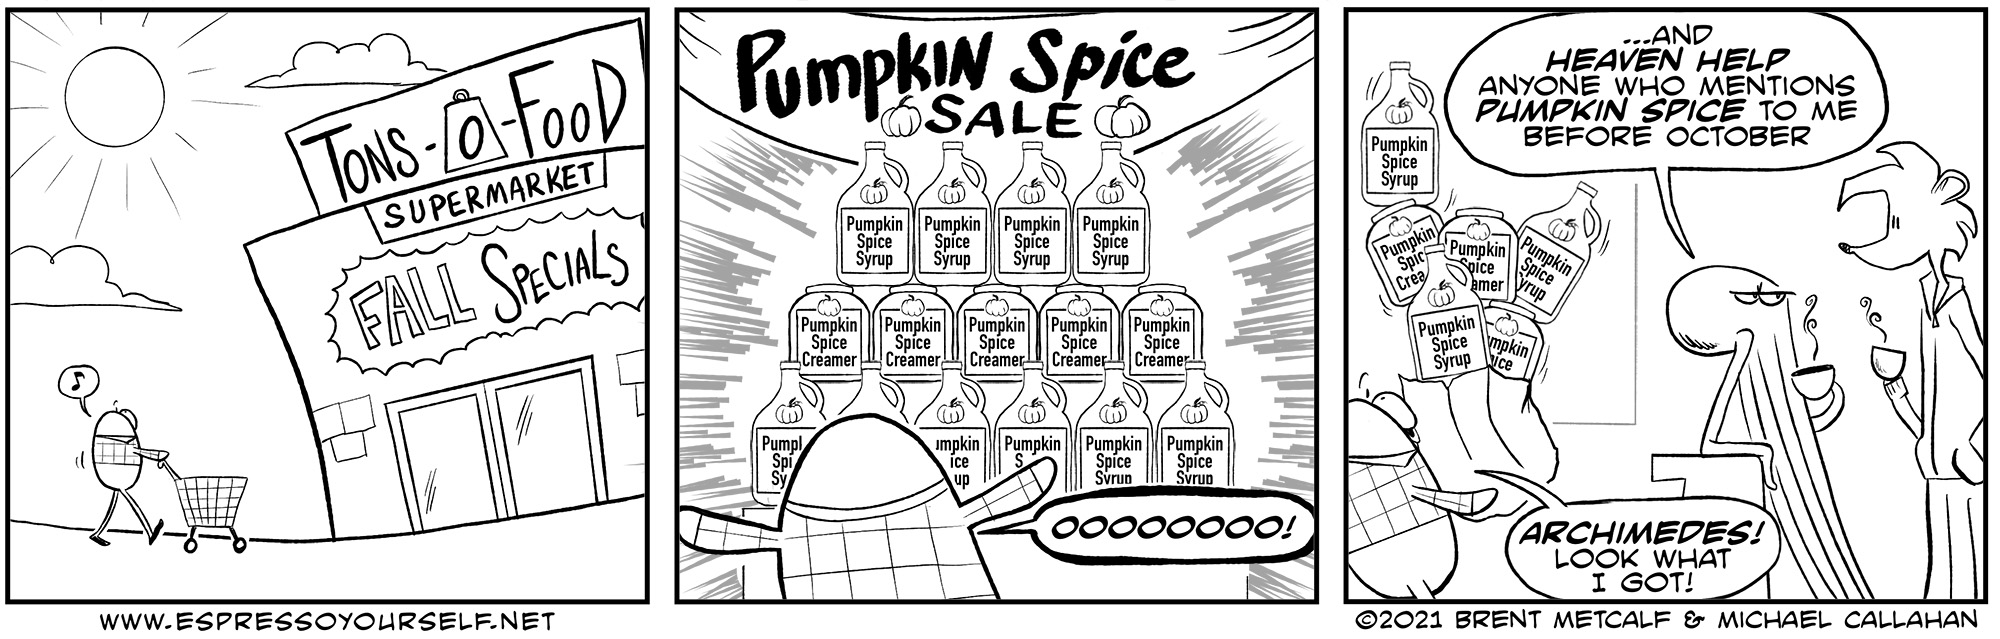 Spice Sale